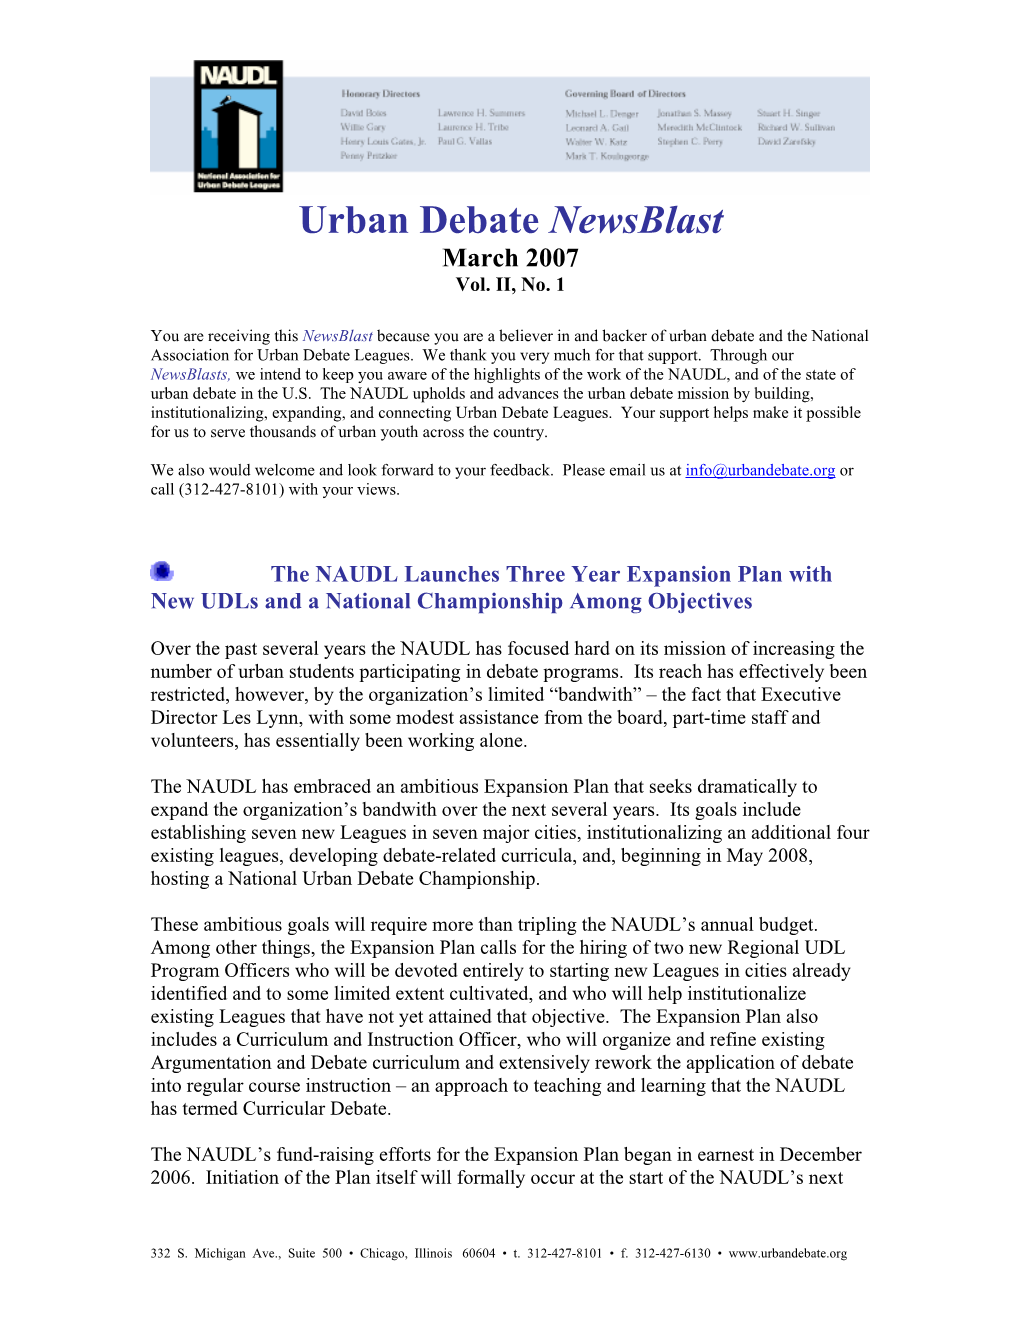 Urban Debate Newsblast March 2007 Vol